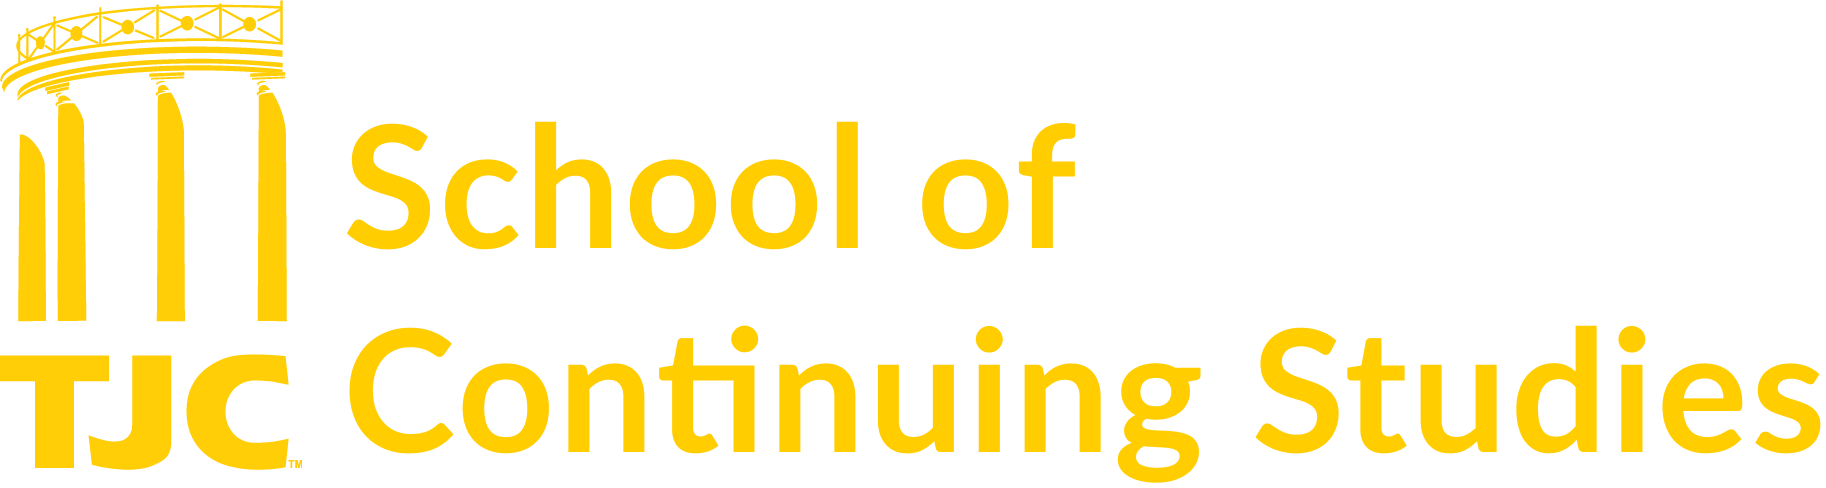 TJC School of Continuing Studies Logo